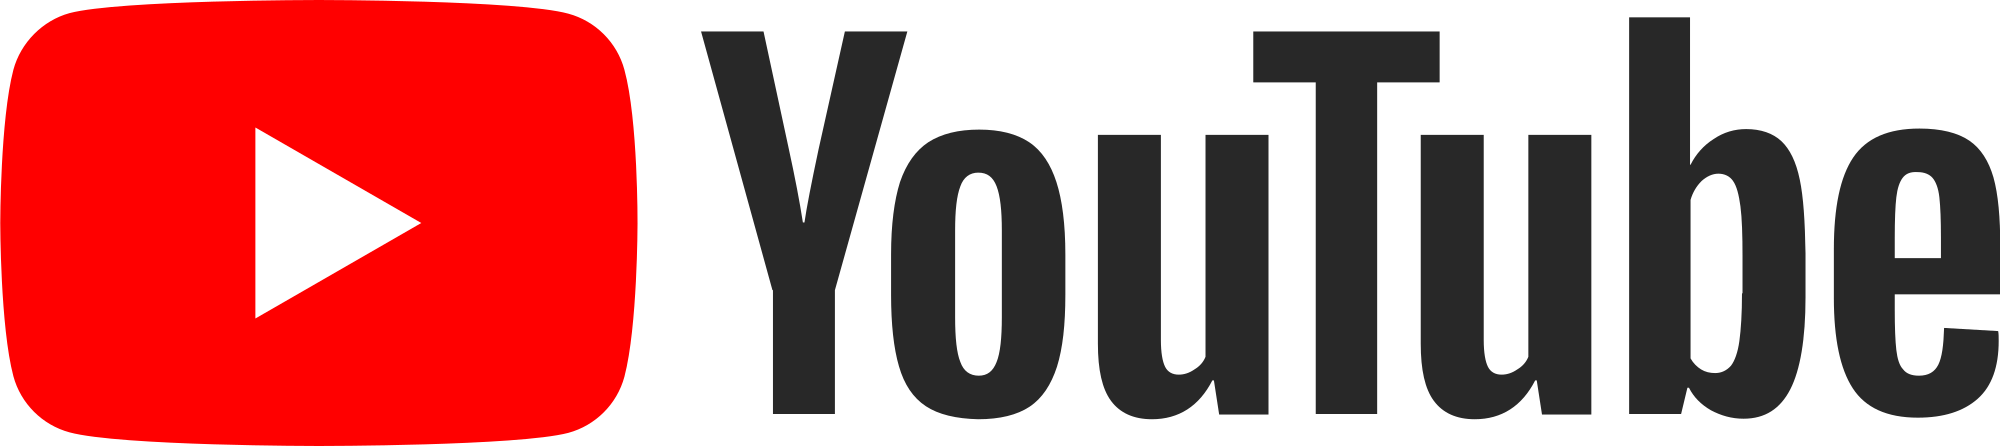 2000px-YouTube_Logo_2017.svg